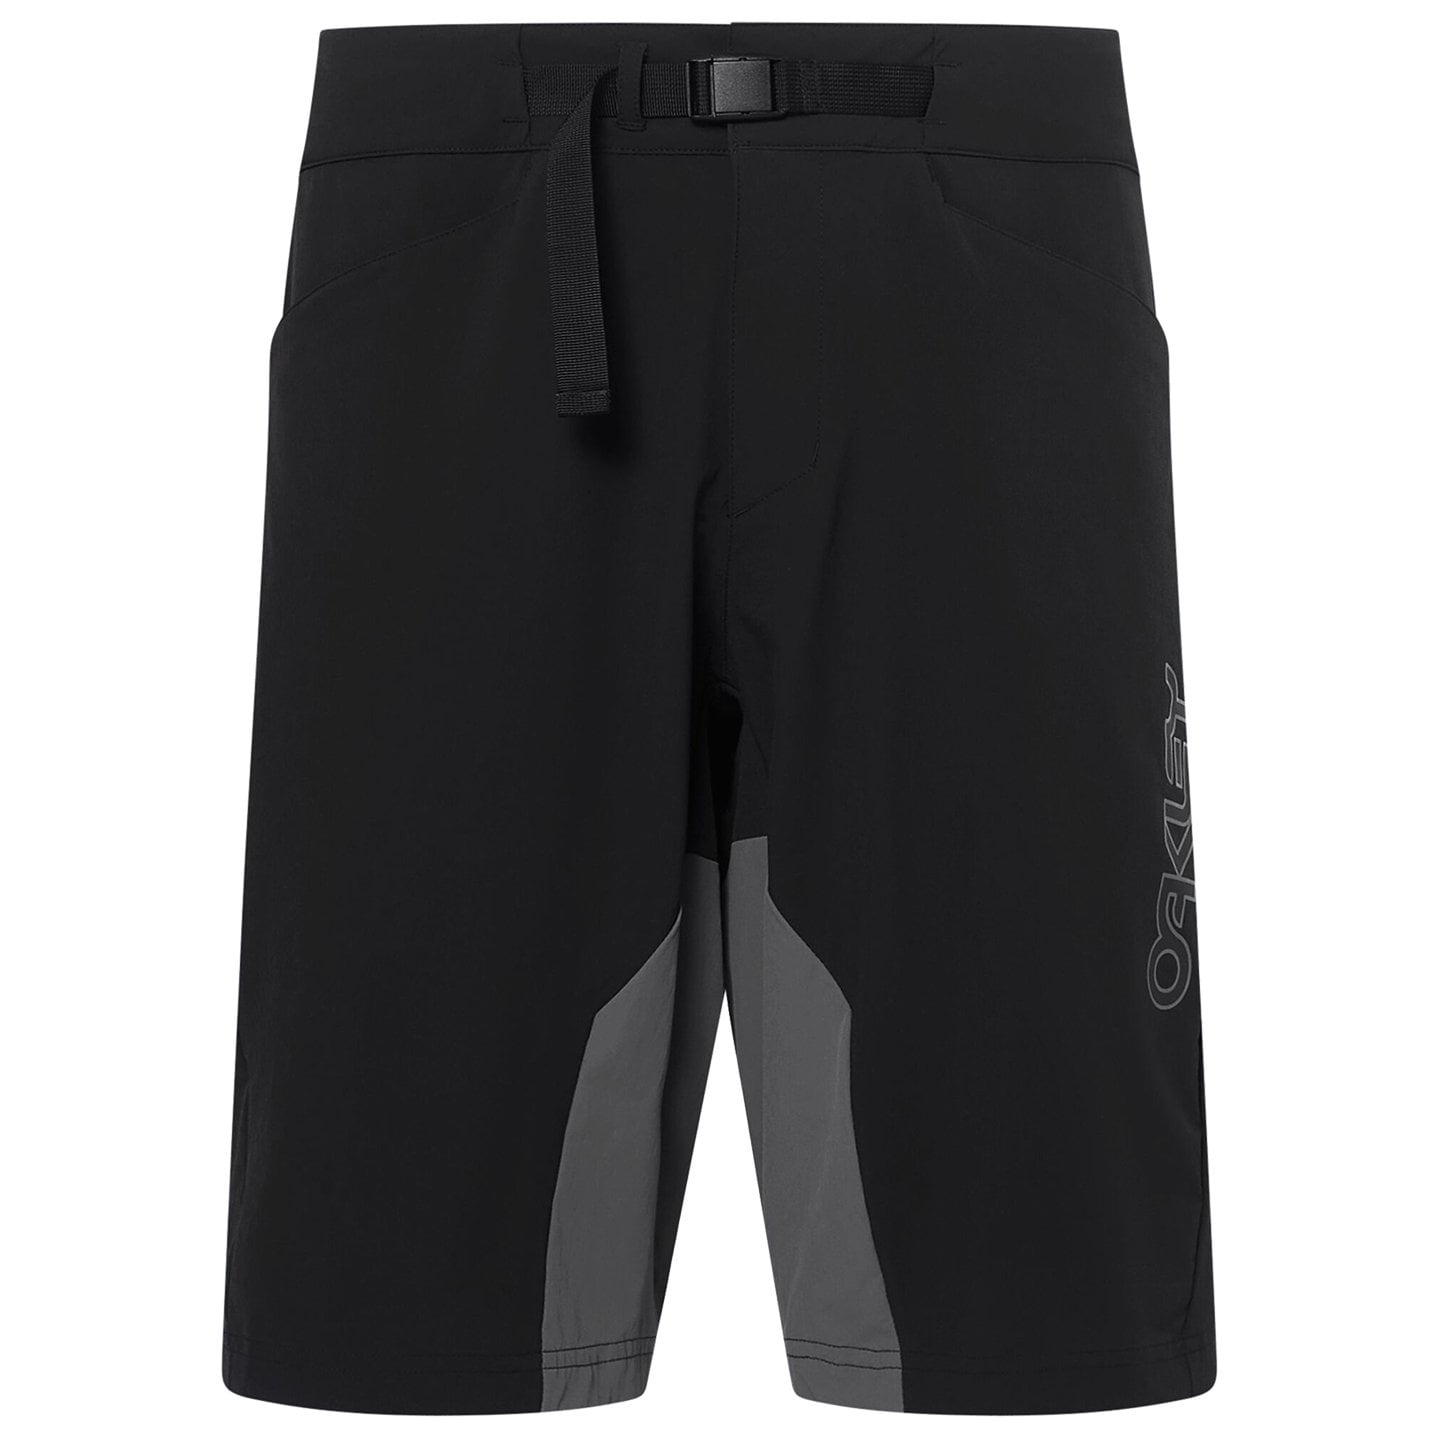 OAKLEY Seeker ’75 w/o Pad Bike Shorts, for men, size L-XL, MTB trousers, MTB gear